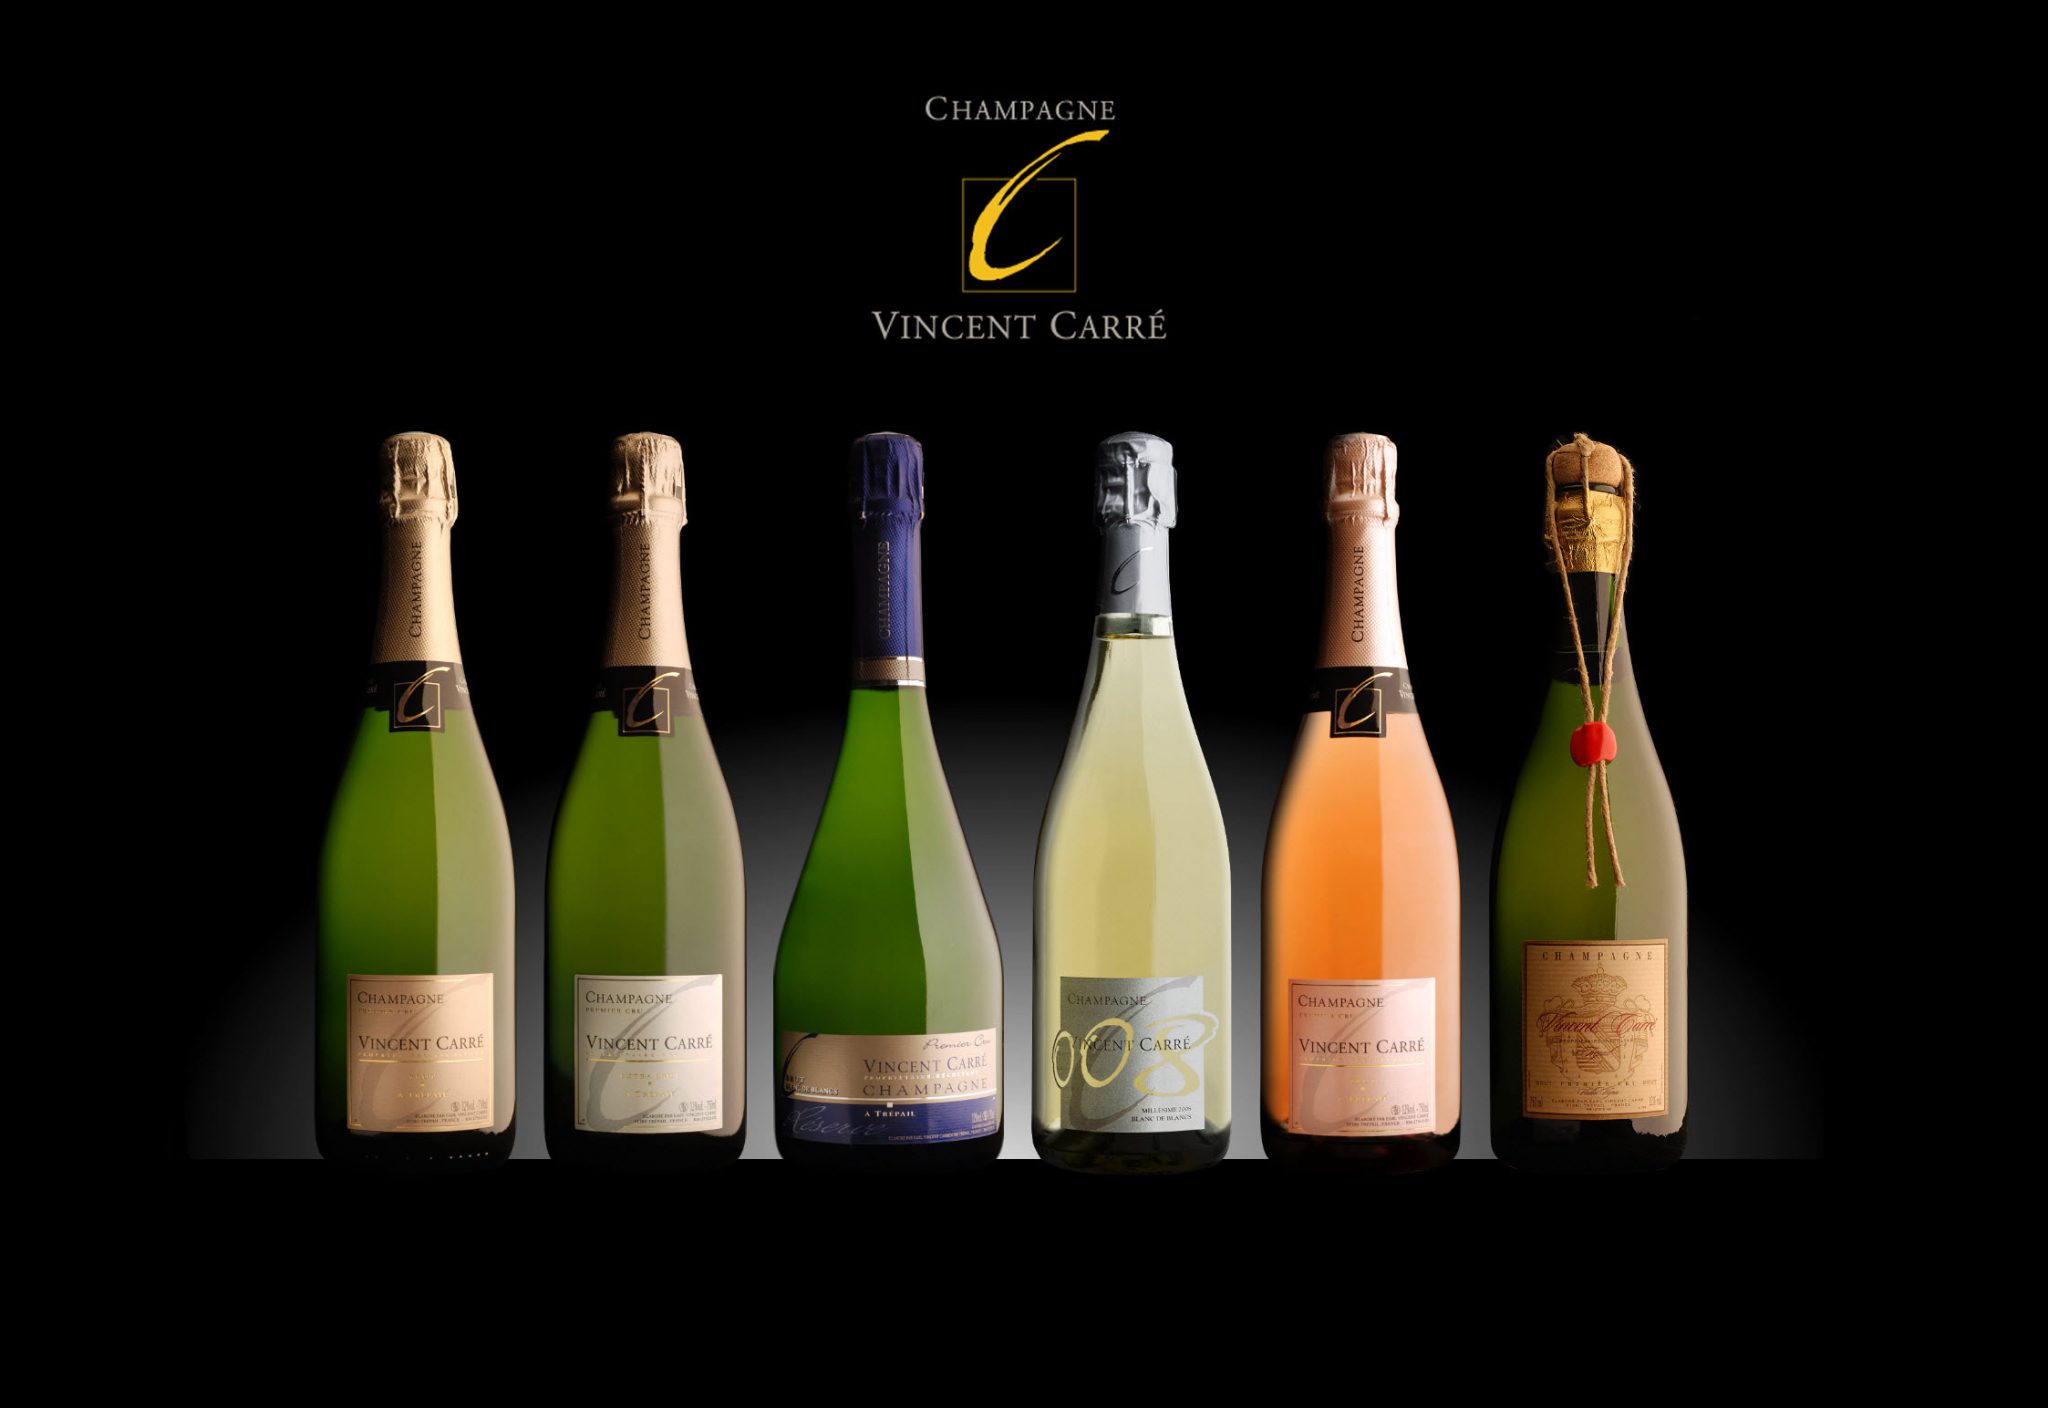 Champagne Vincent Carré